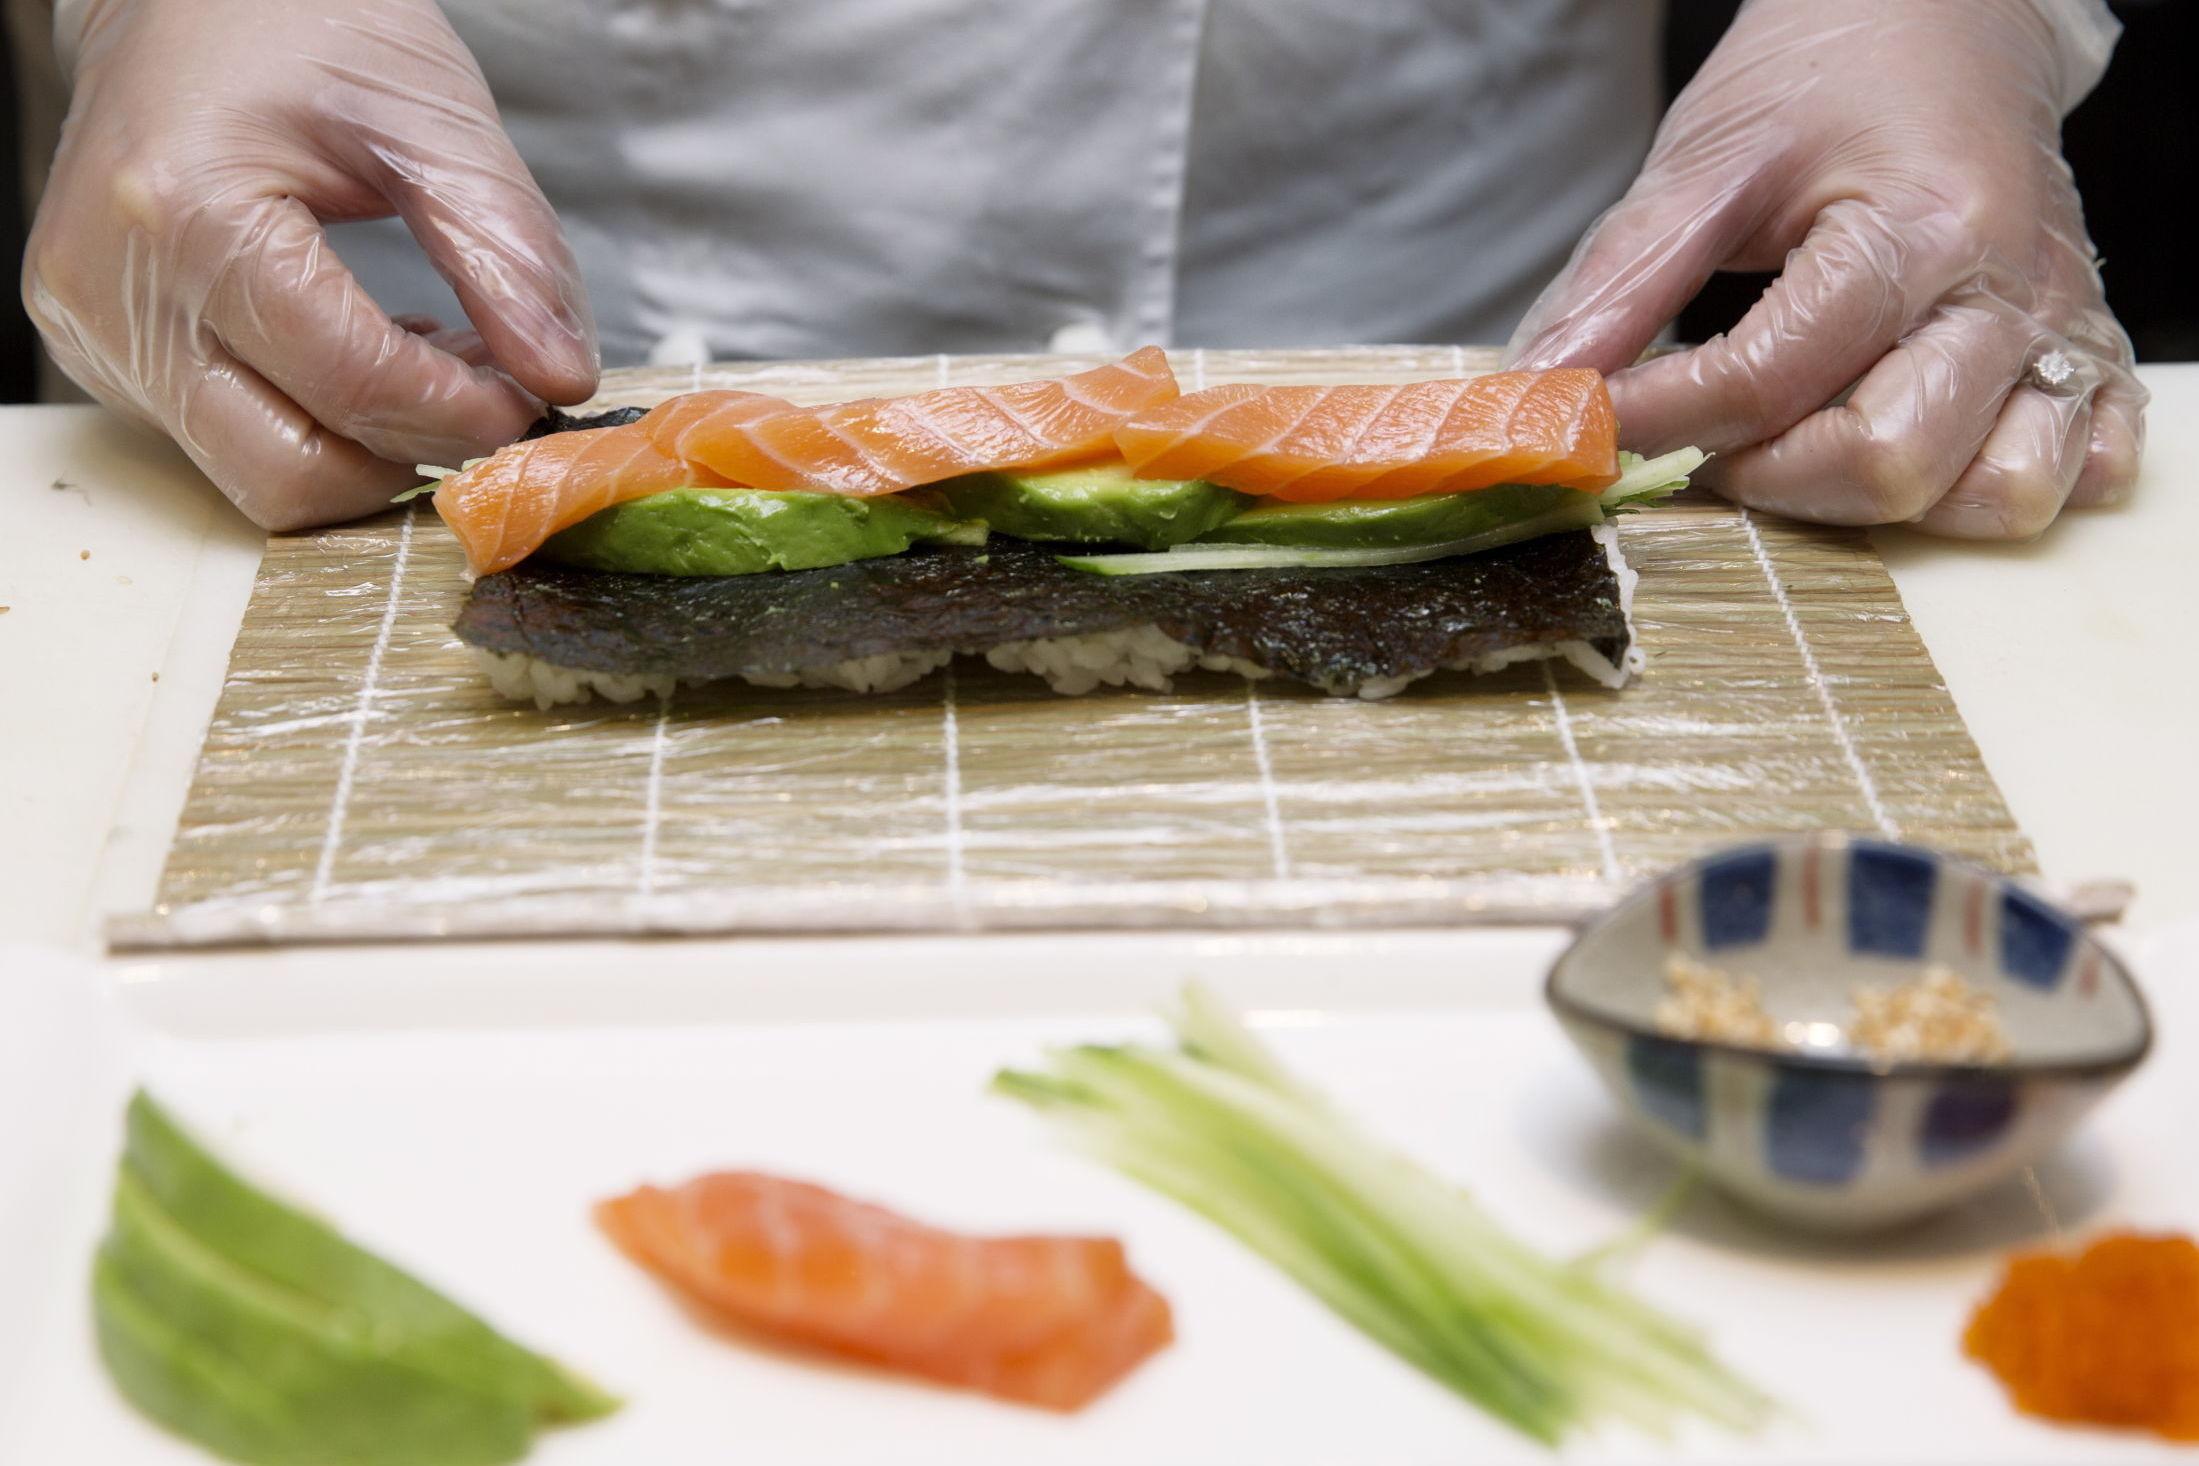 2. Snu siden med ris ned mot sushimatten. Legg agurk, avokado og laks cirka midt på nori-platen.